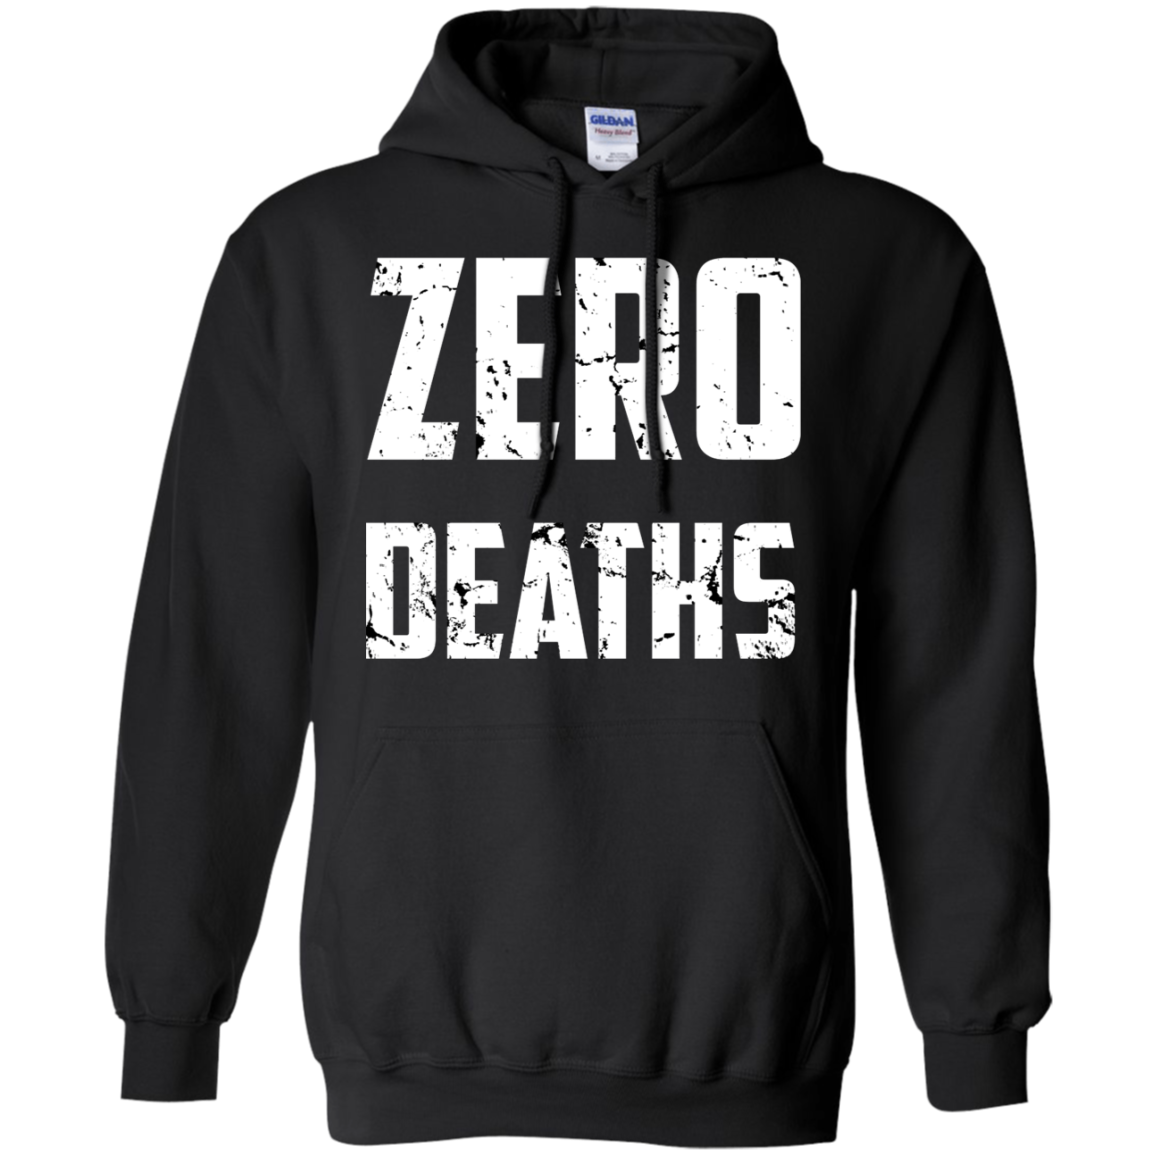 Zero Deaths